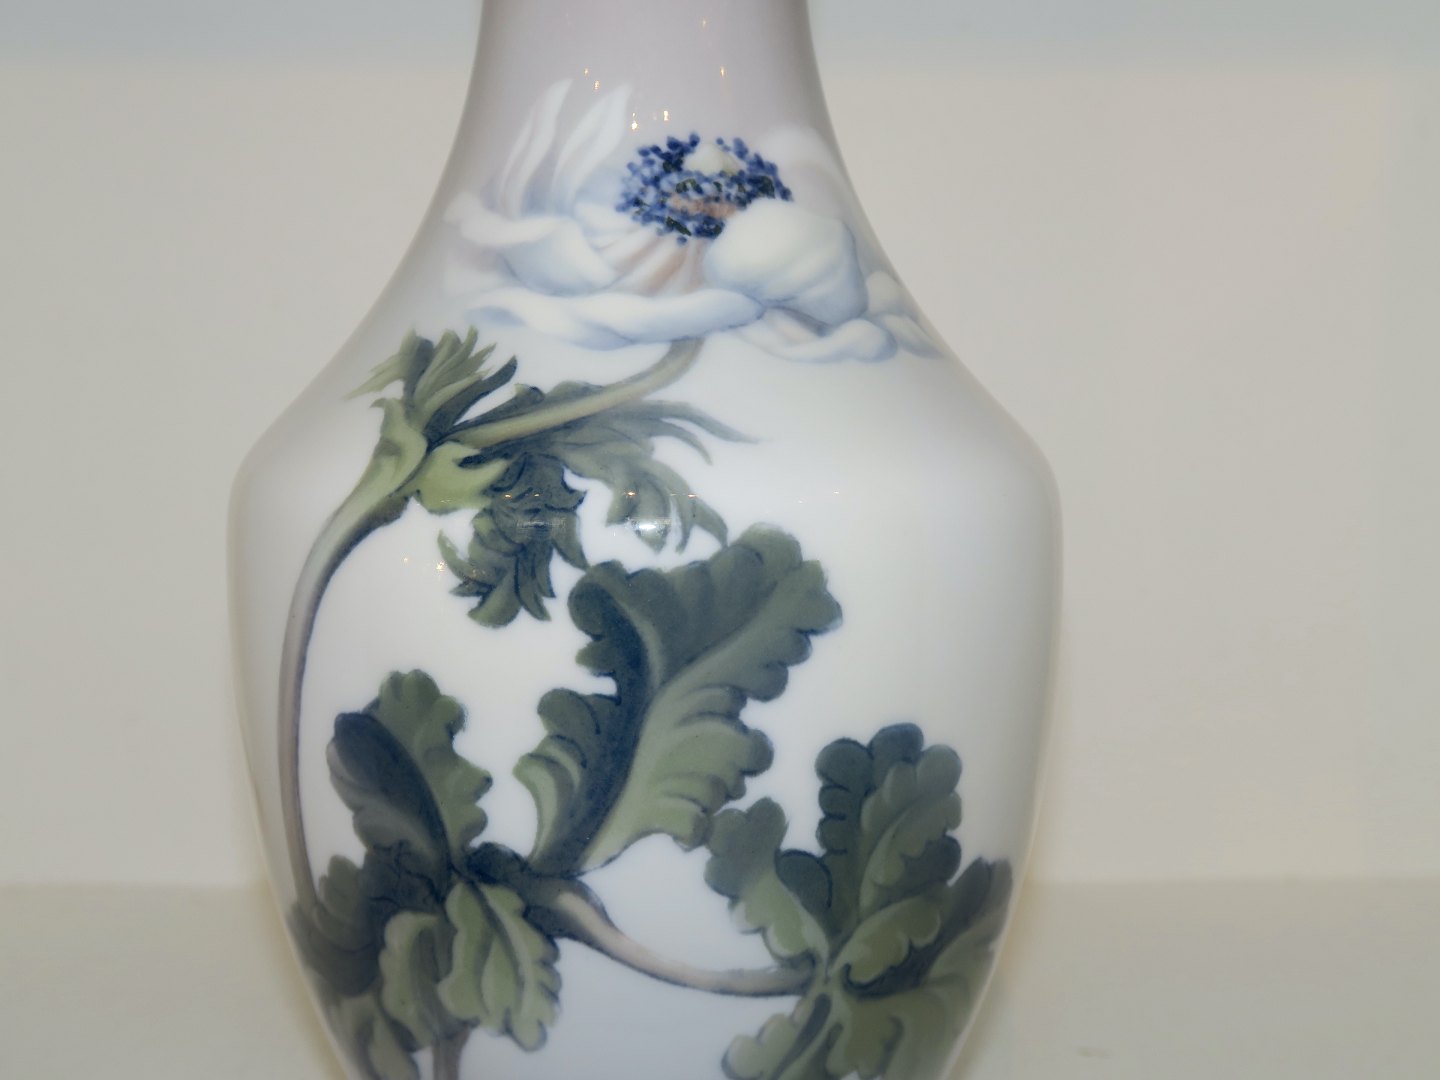 Nếu bạn đam mê trang trí gốm sứ, thì Gốm Bing & Grondahl là cái tên rất đáng để bạn tìm hiểu. Các sản phẩm trang trí Art Nouveau với họa tiết hoa tulip được chế tác bởi những nghệ nhân tài năng sẽ đem đến cho bạn một trải nghiệm thú vị và đầy sáng tạo.